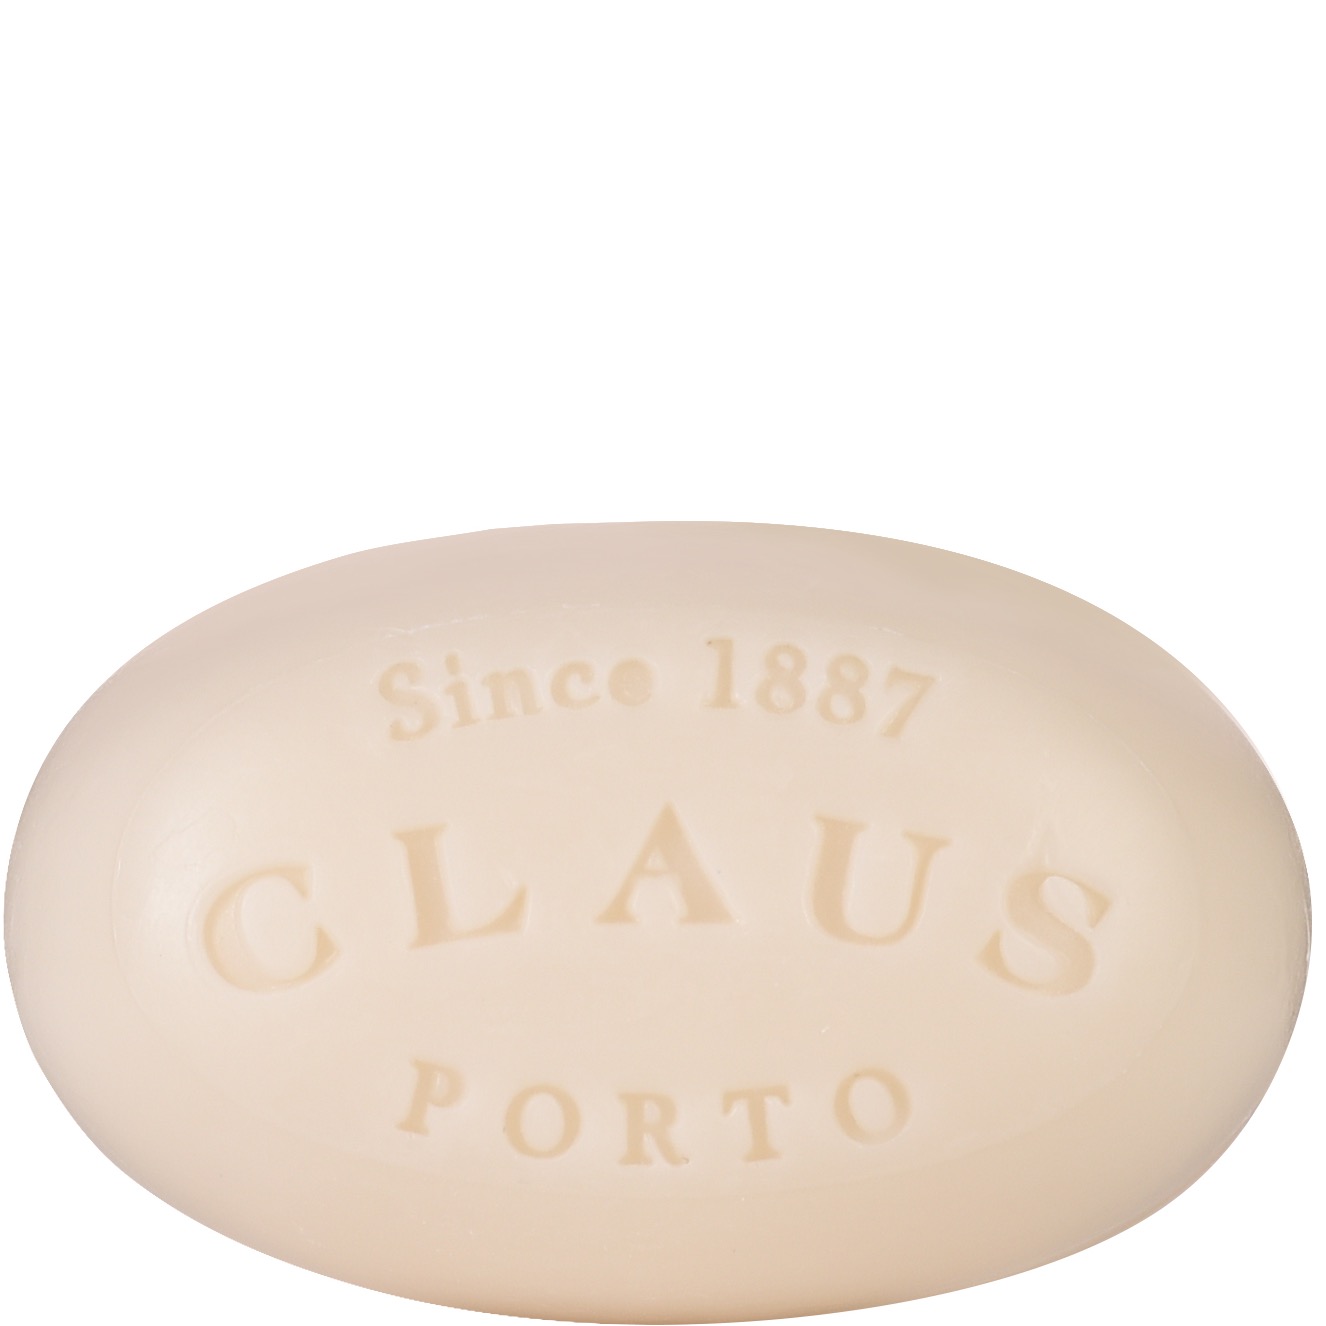 Claus Porto Soap Bar Voga Acacia Tuberose 150g - 1.2 - CP-SP009